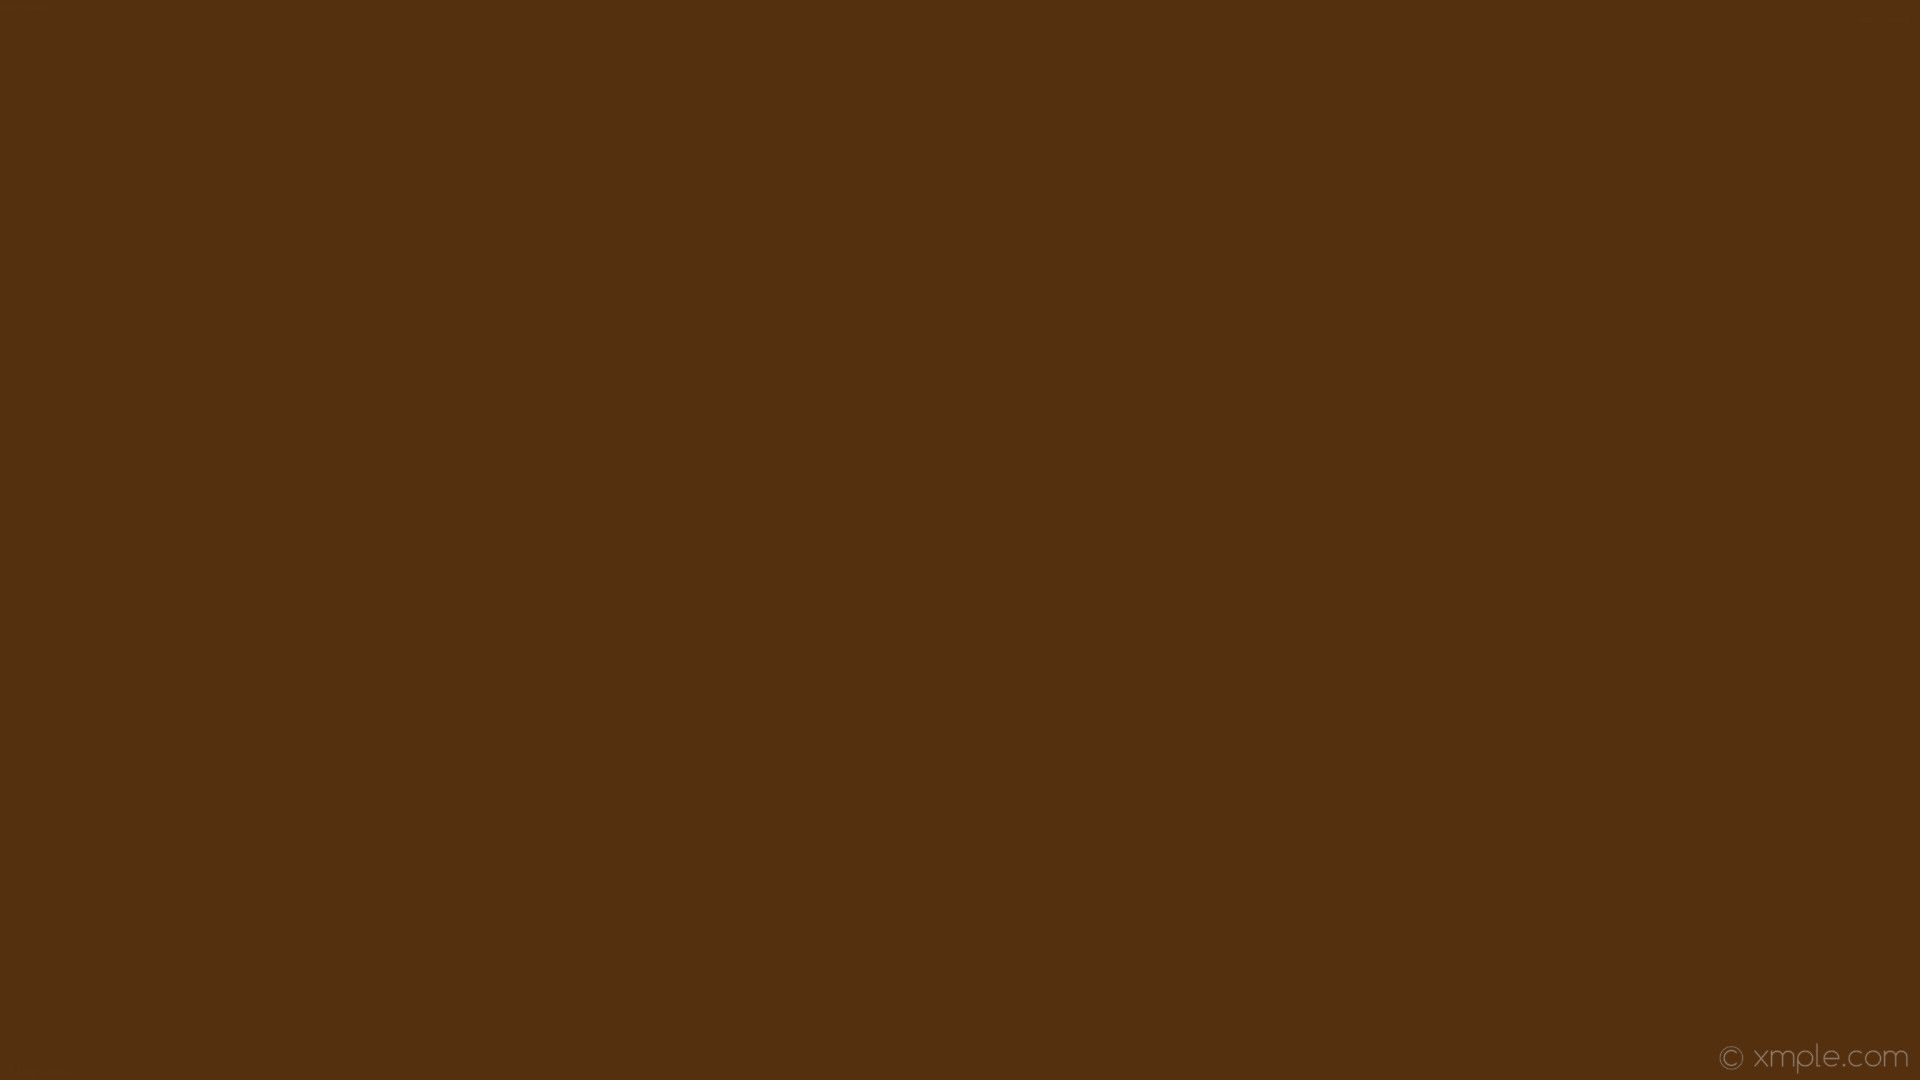 Solid Brown Wallpapers - Top Những Hình Ảnh Đẹp